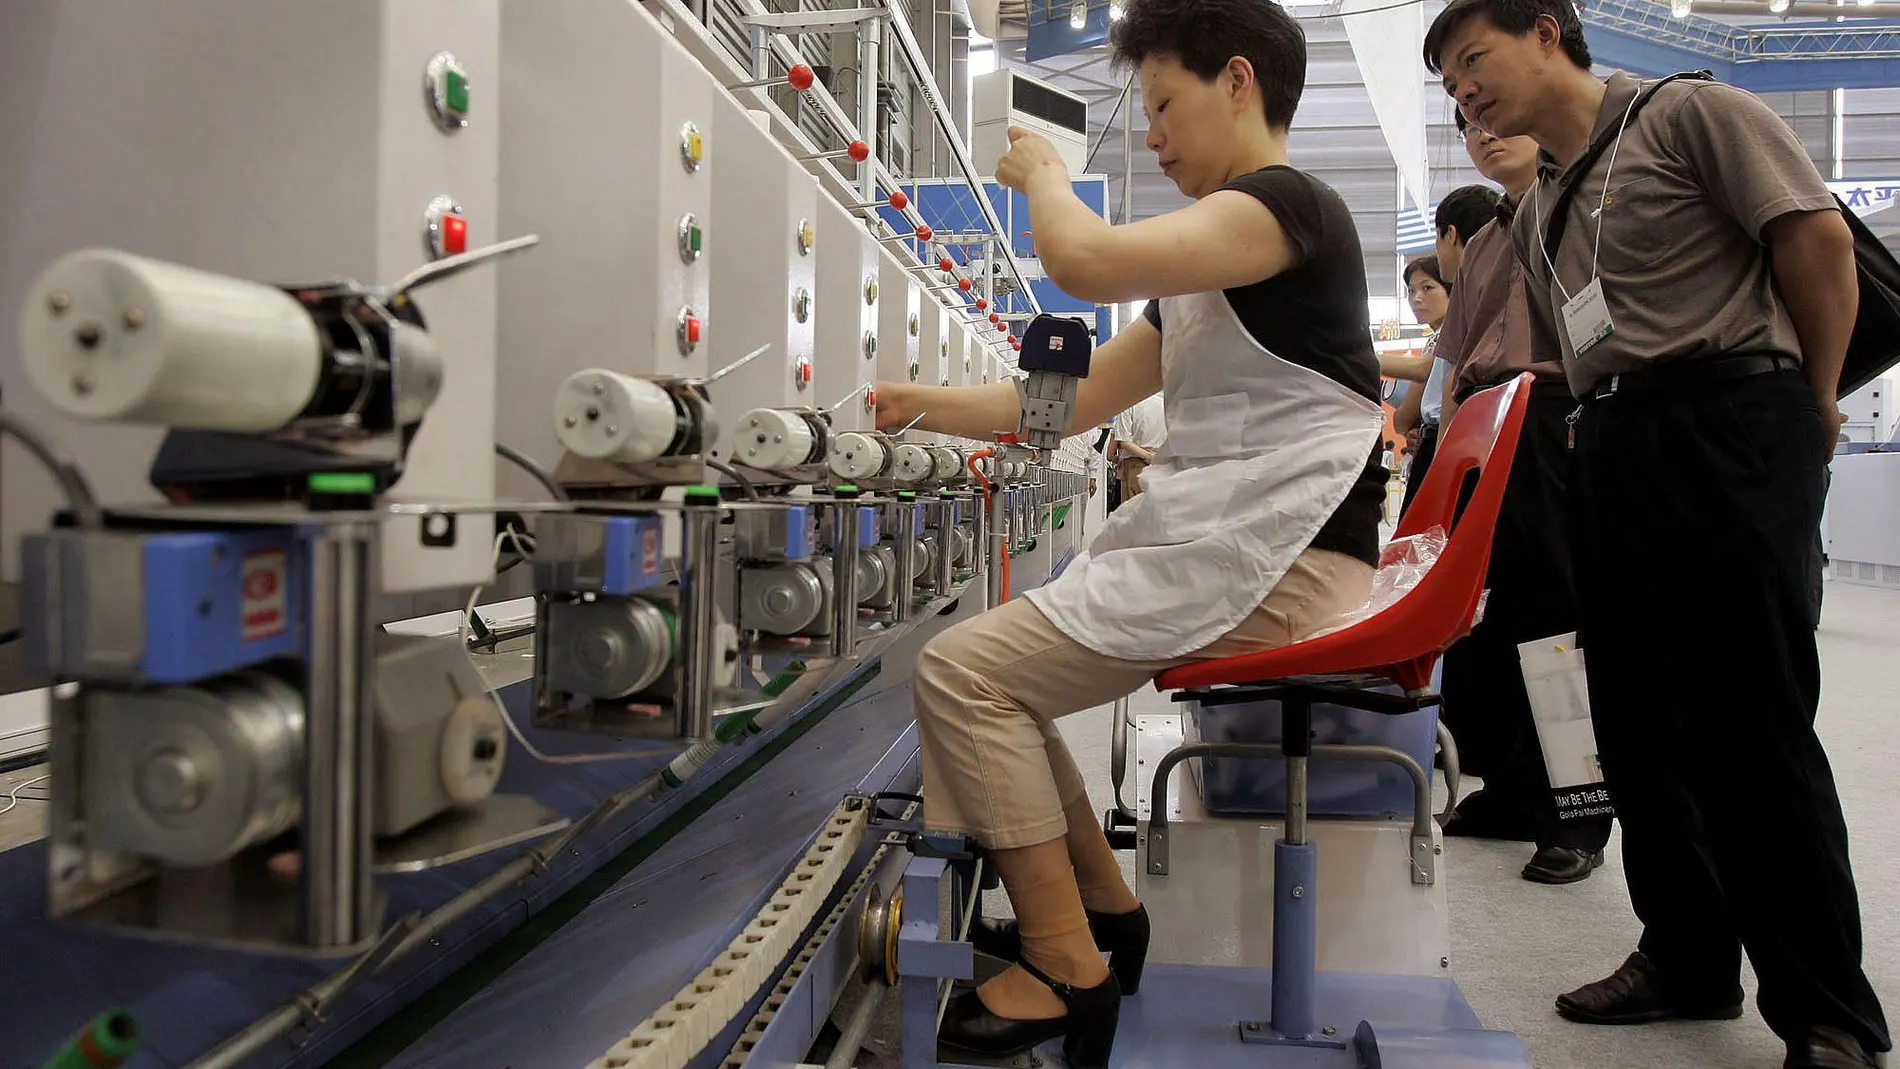 Una mujer en una fábrica textil en China